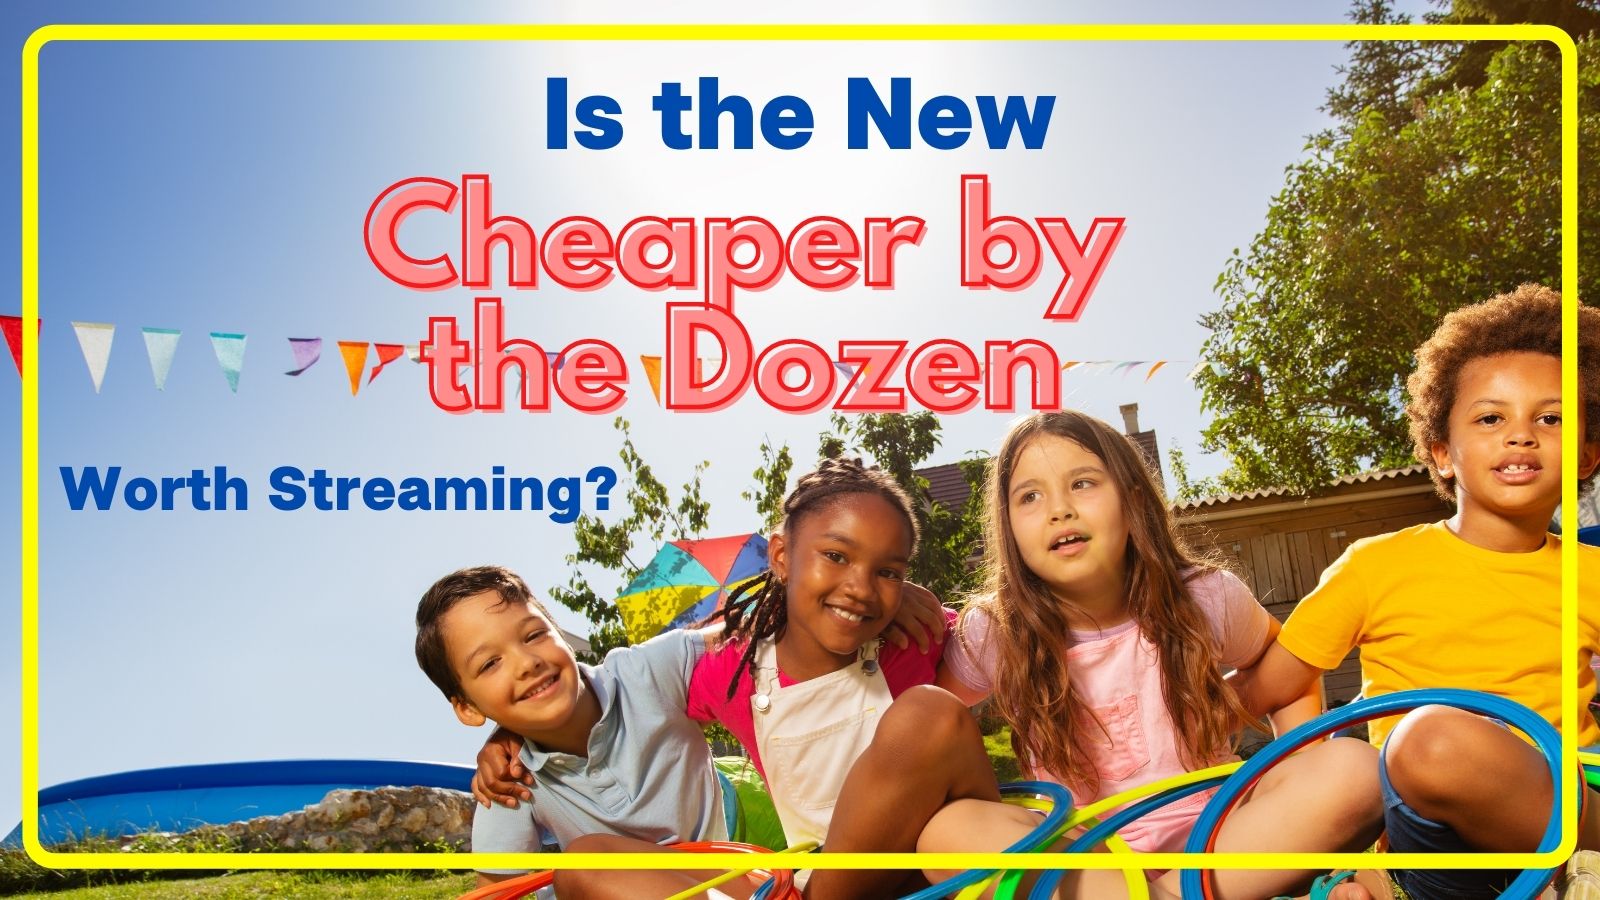 New Cheaper by the Dozen 2022 main image